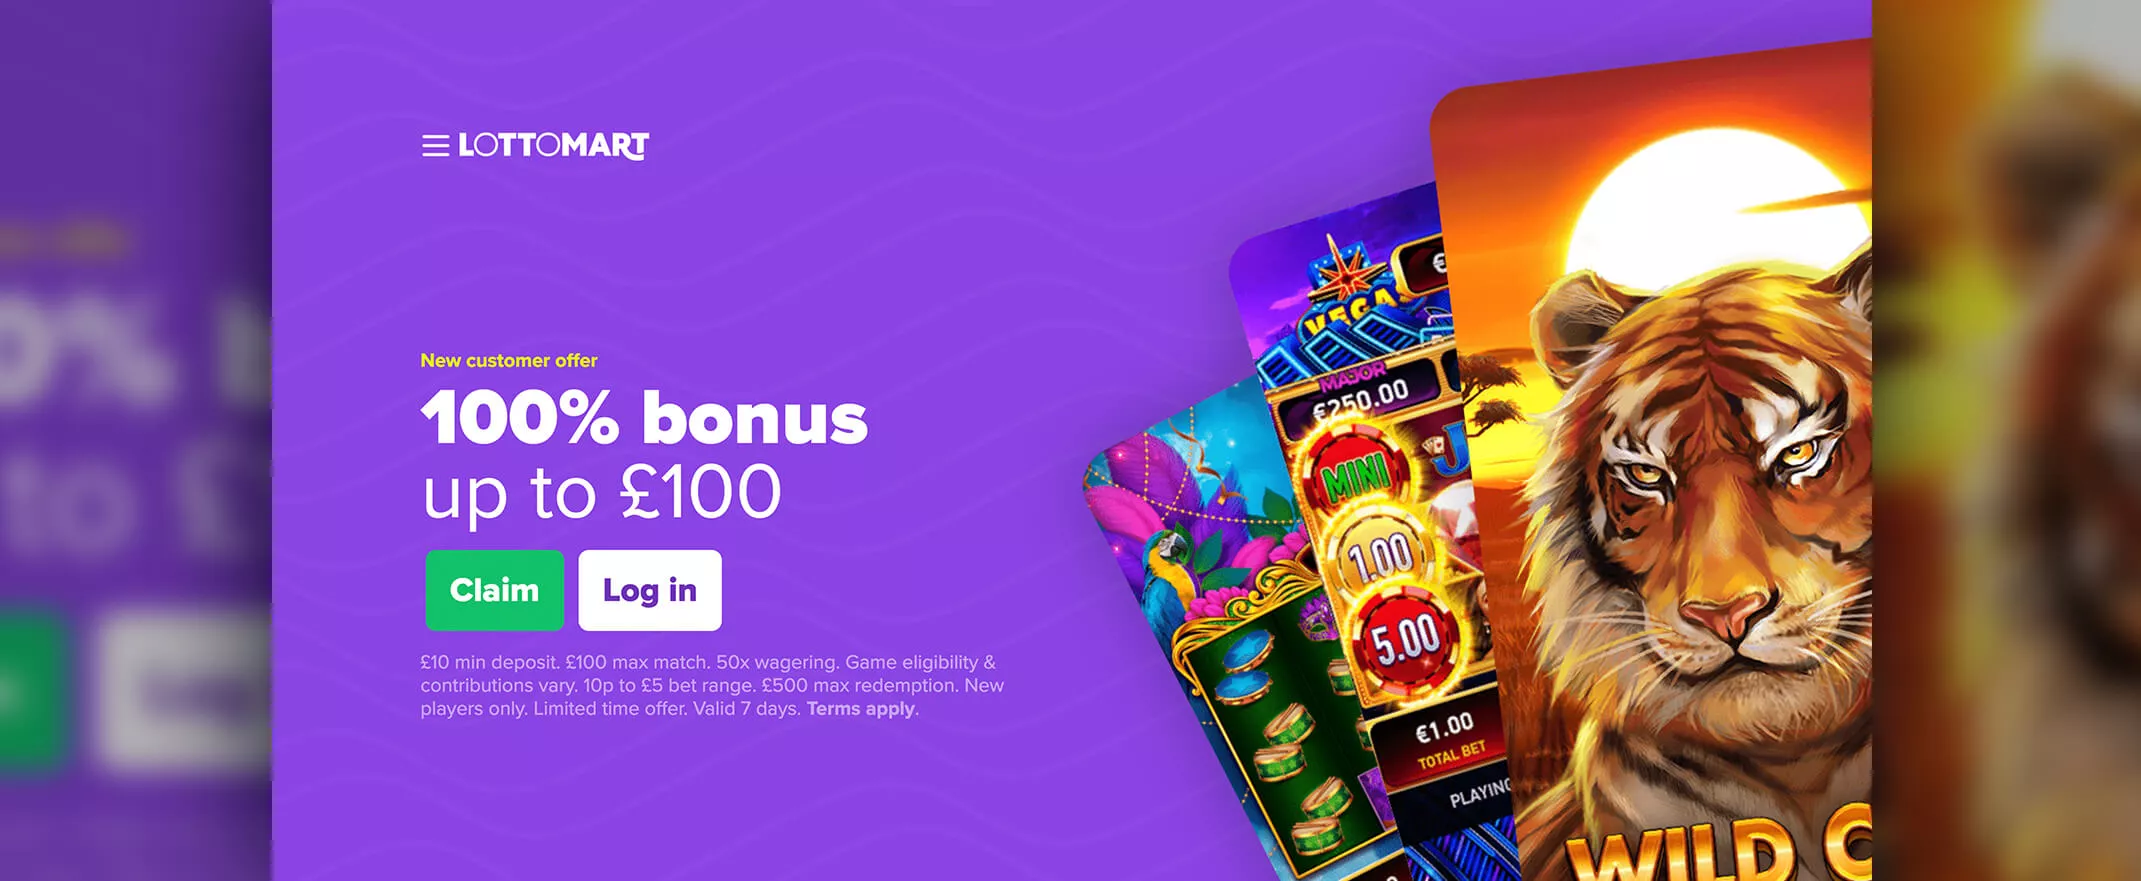 Lottomart Casino screenshot of the homepage